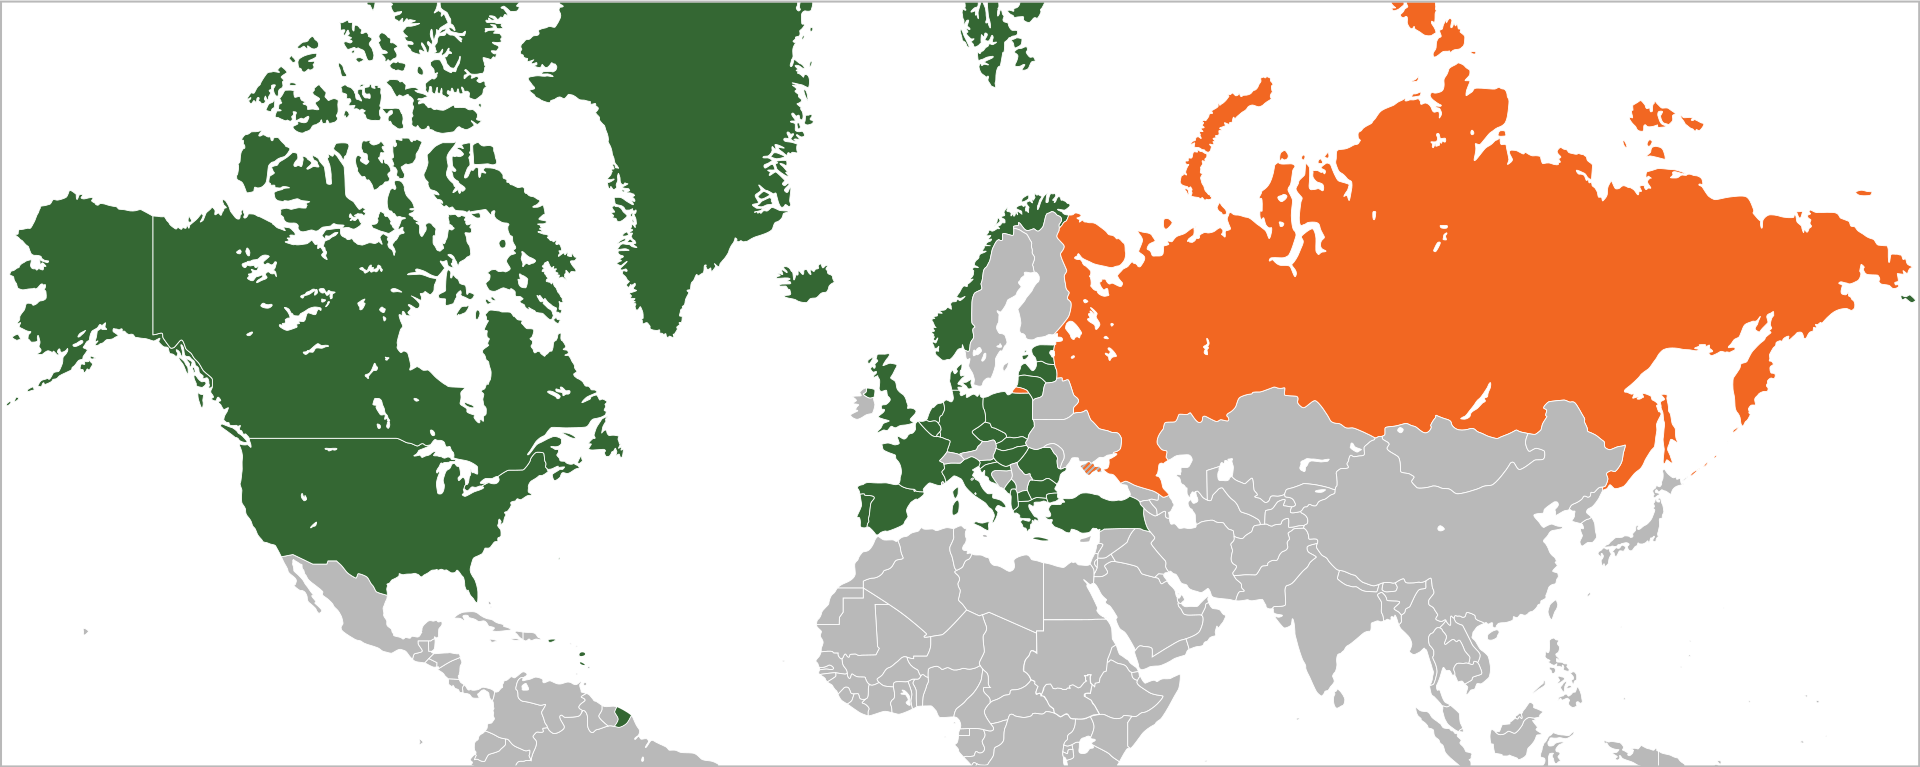 Страны-члены НАТО в зеленом цвете и Россия в оранжевом. Фото: Location_NATO.svg : Ssolbergj / Wikipedia.org